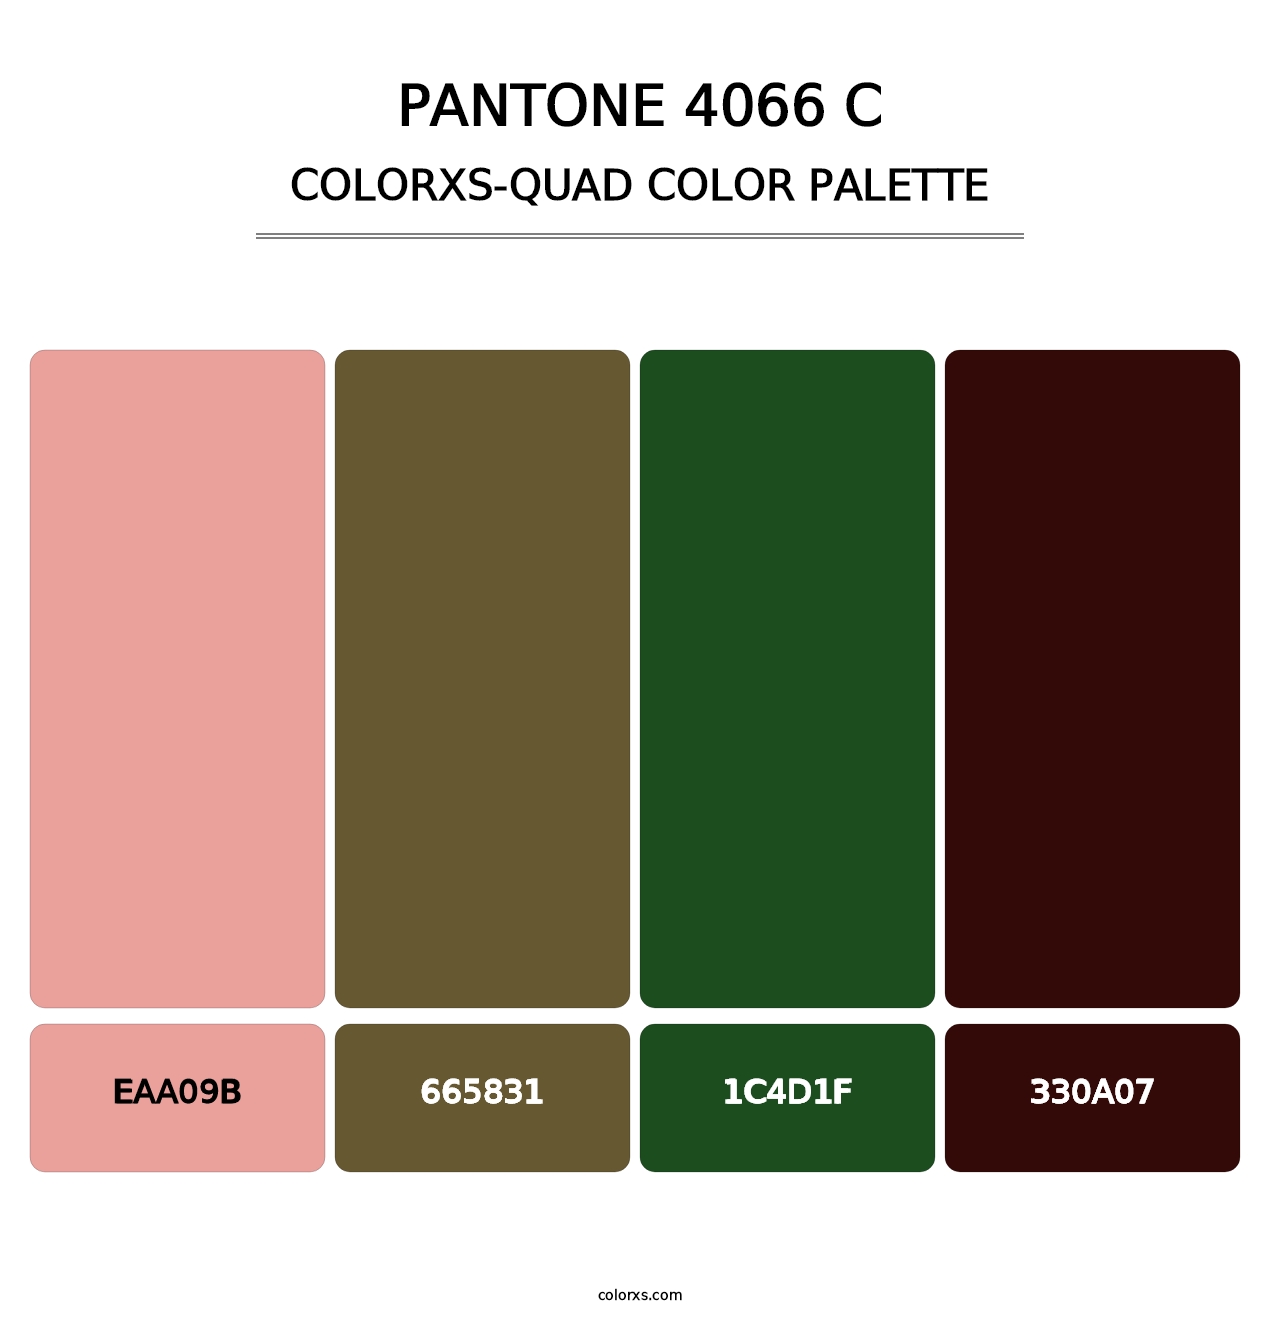 PANTONE 4066 C - Colorxs Quad Palette